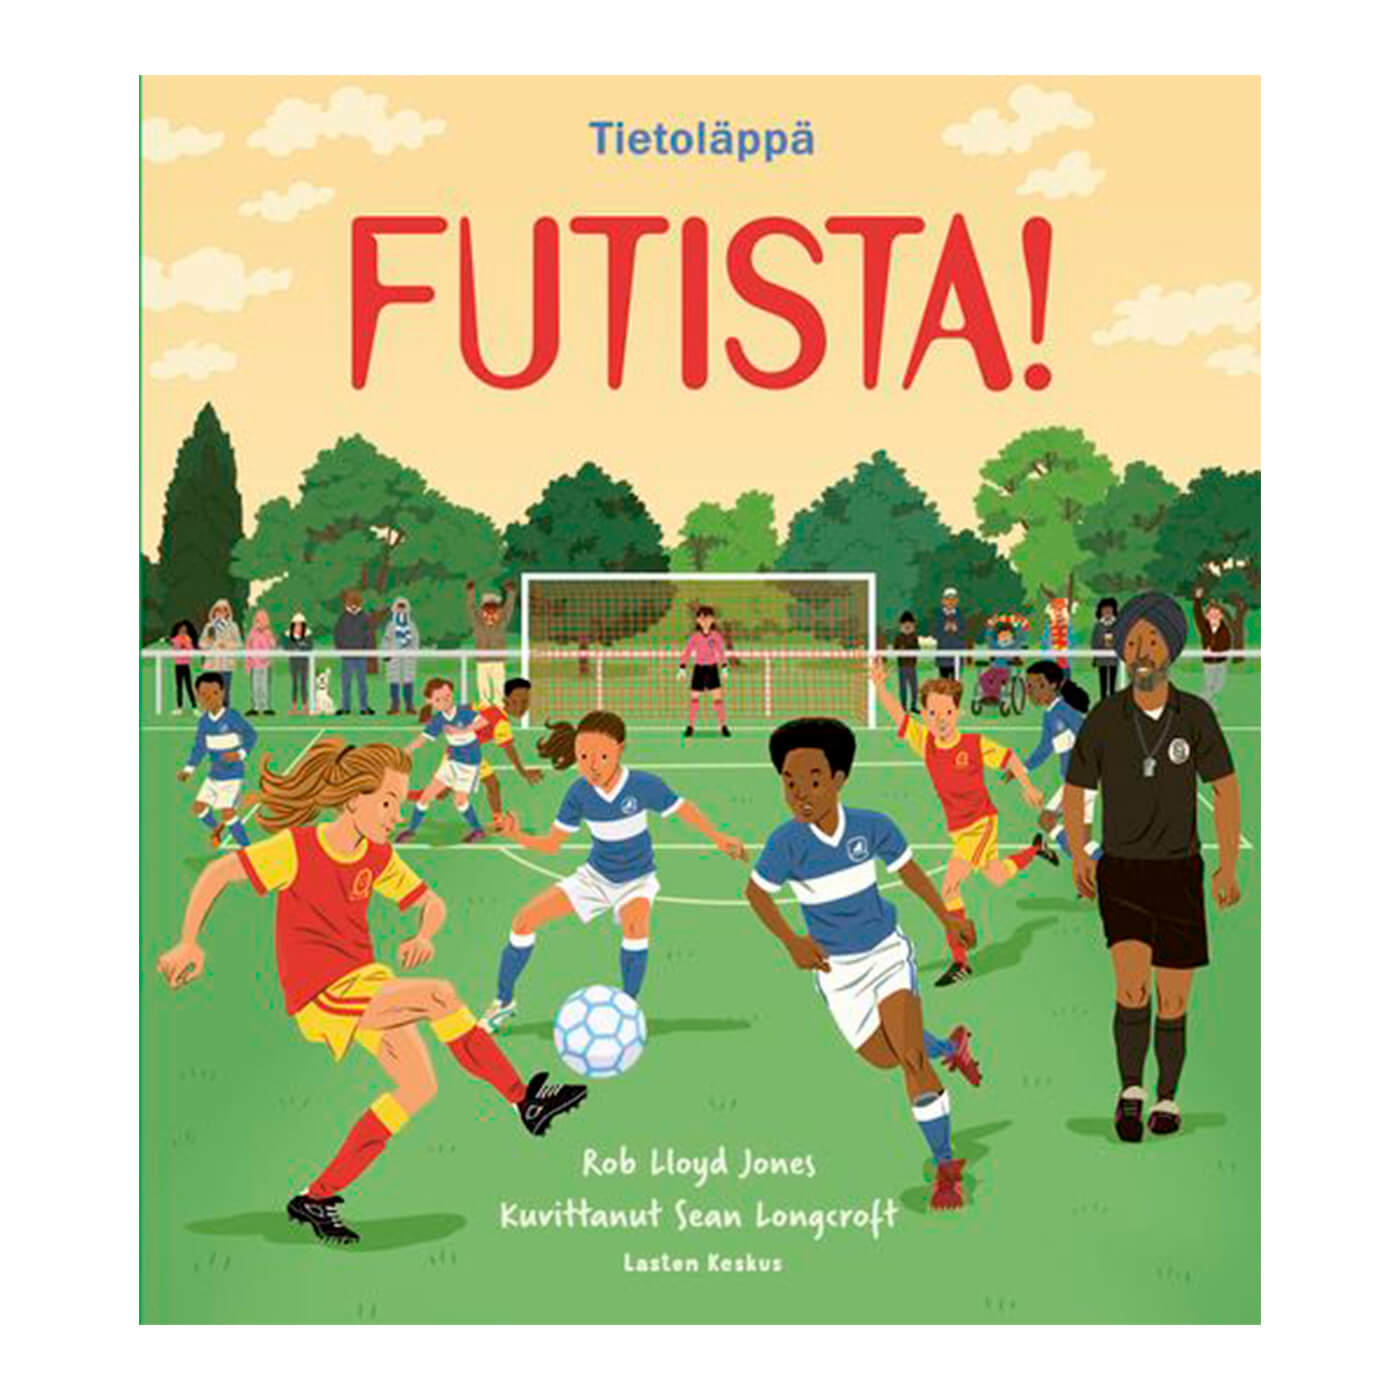 Futista! book